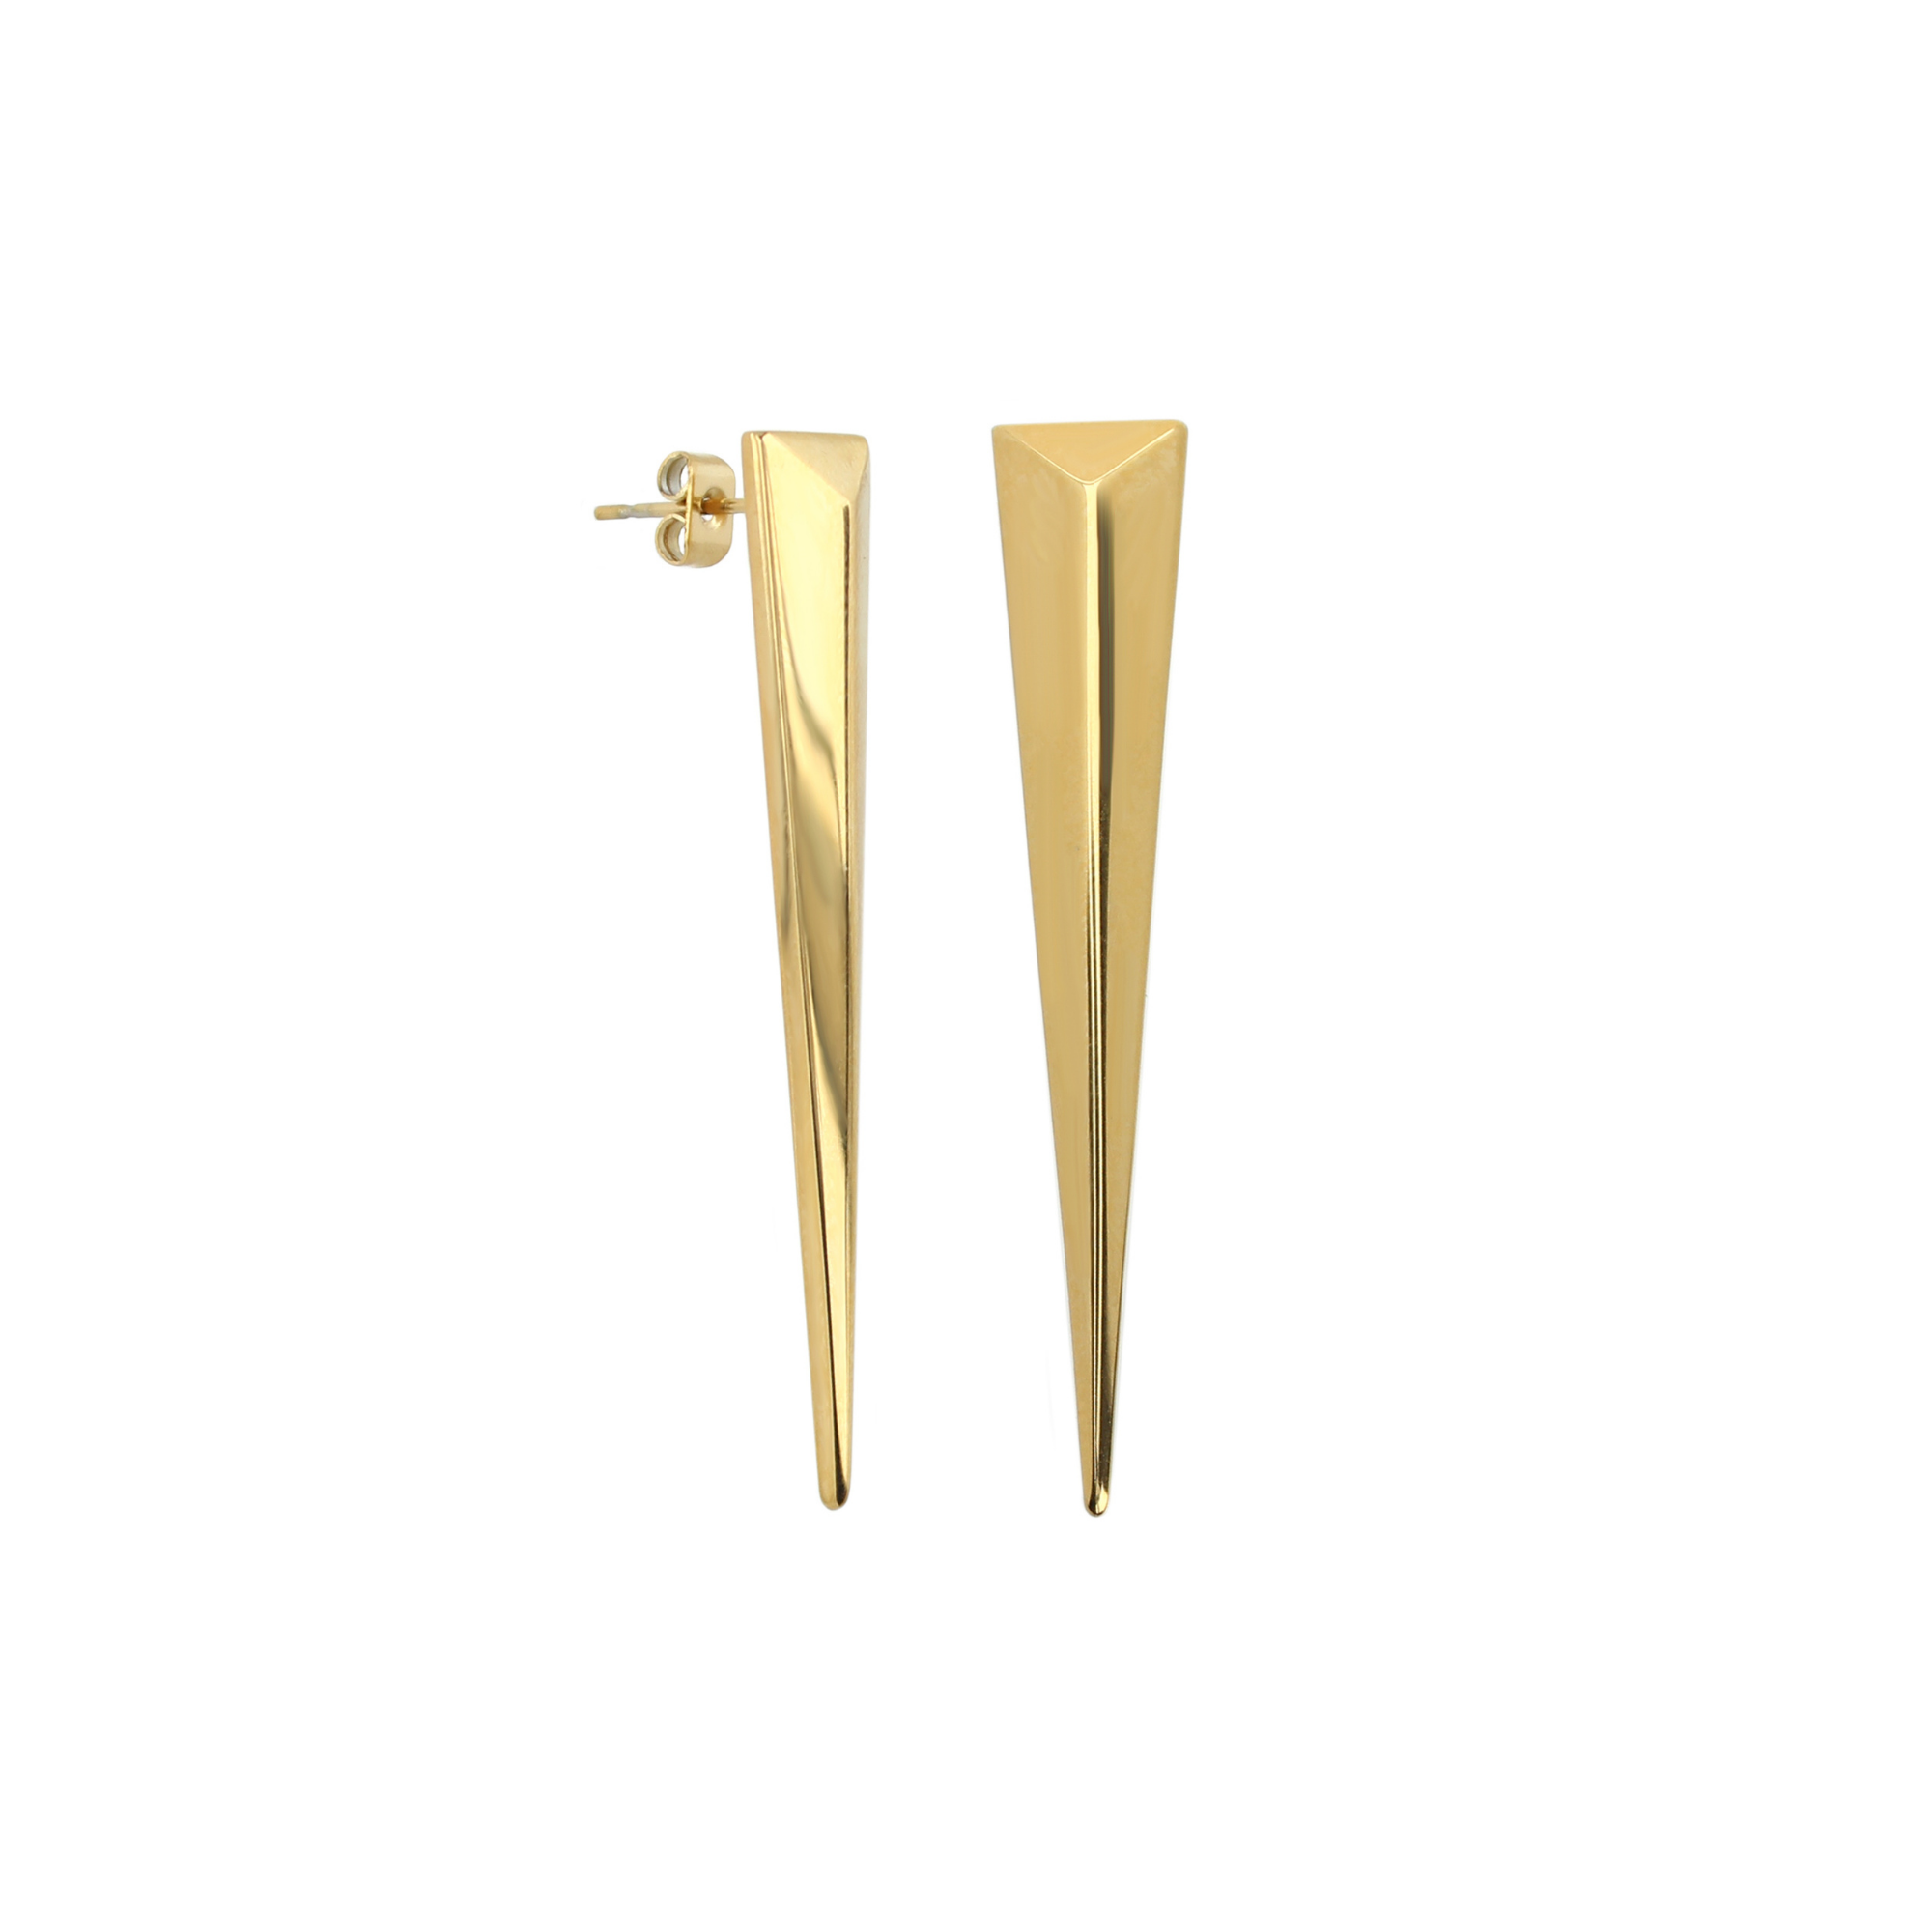 V-shaped Earring Non-tarnish 18K Gold Plated Earring Dainty V -  UK